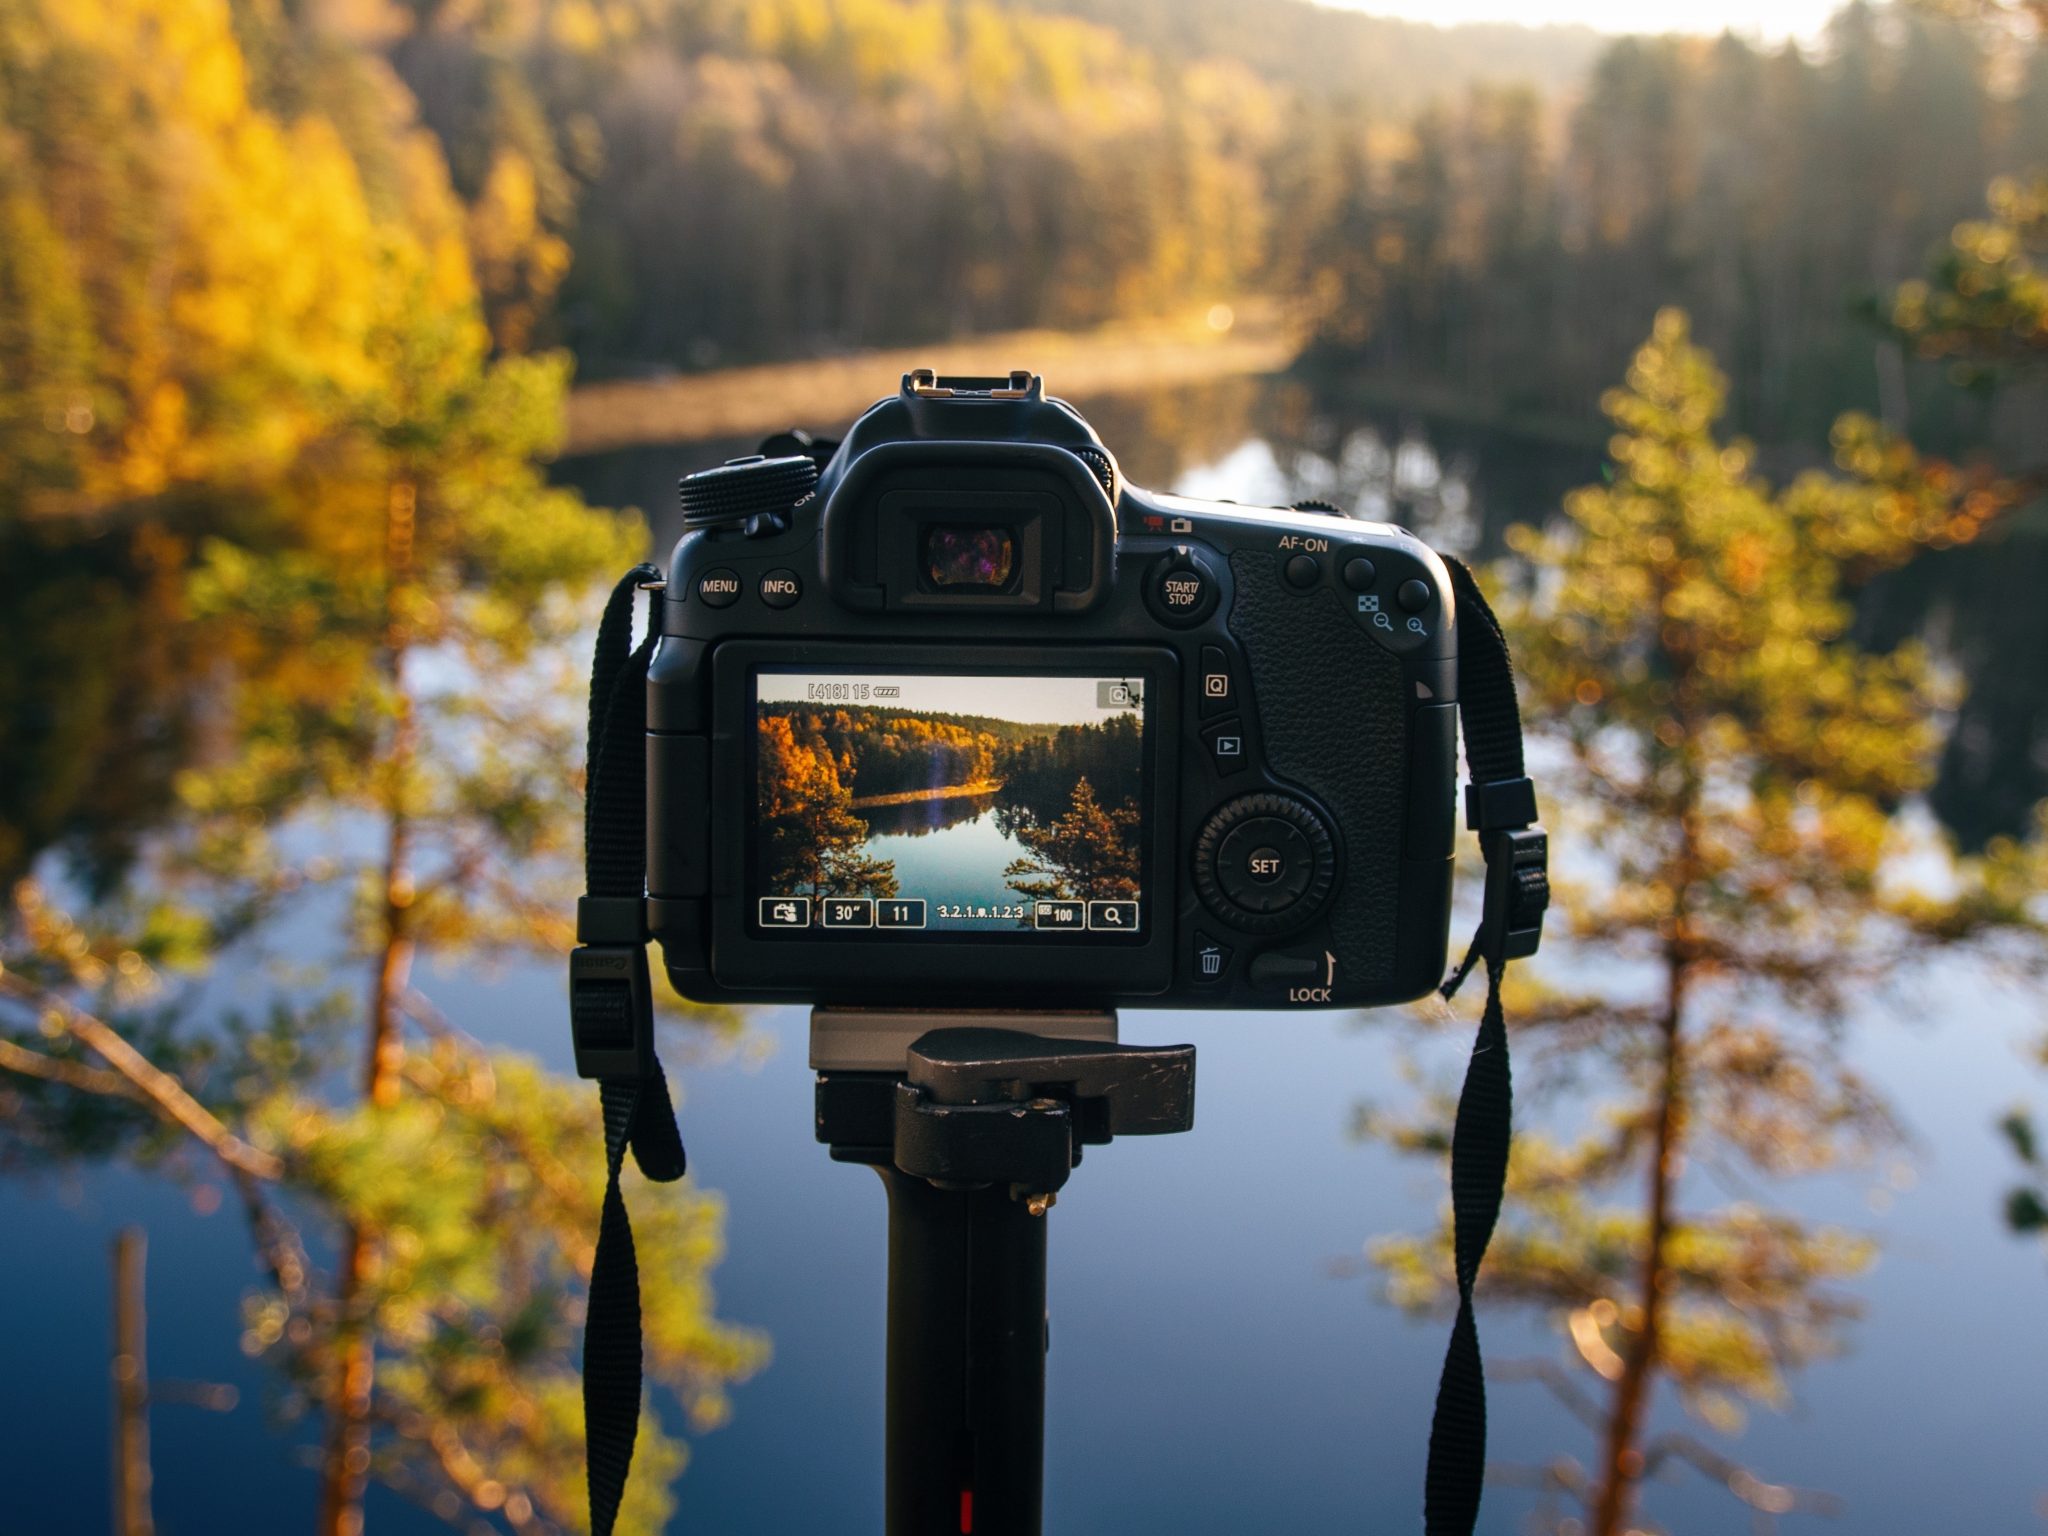 Sử dụng chân máy chụp ảnh khi thực hiện kỹ thuật chụp như Panorama, HDR, Timelapse và Exposure Blending